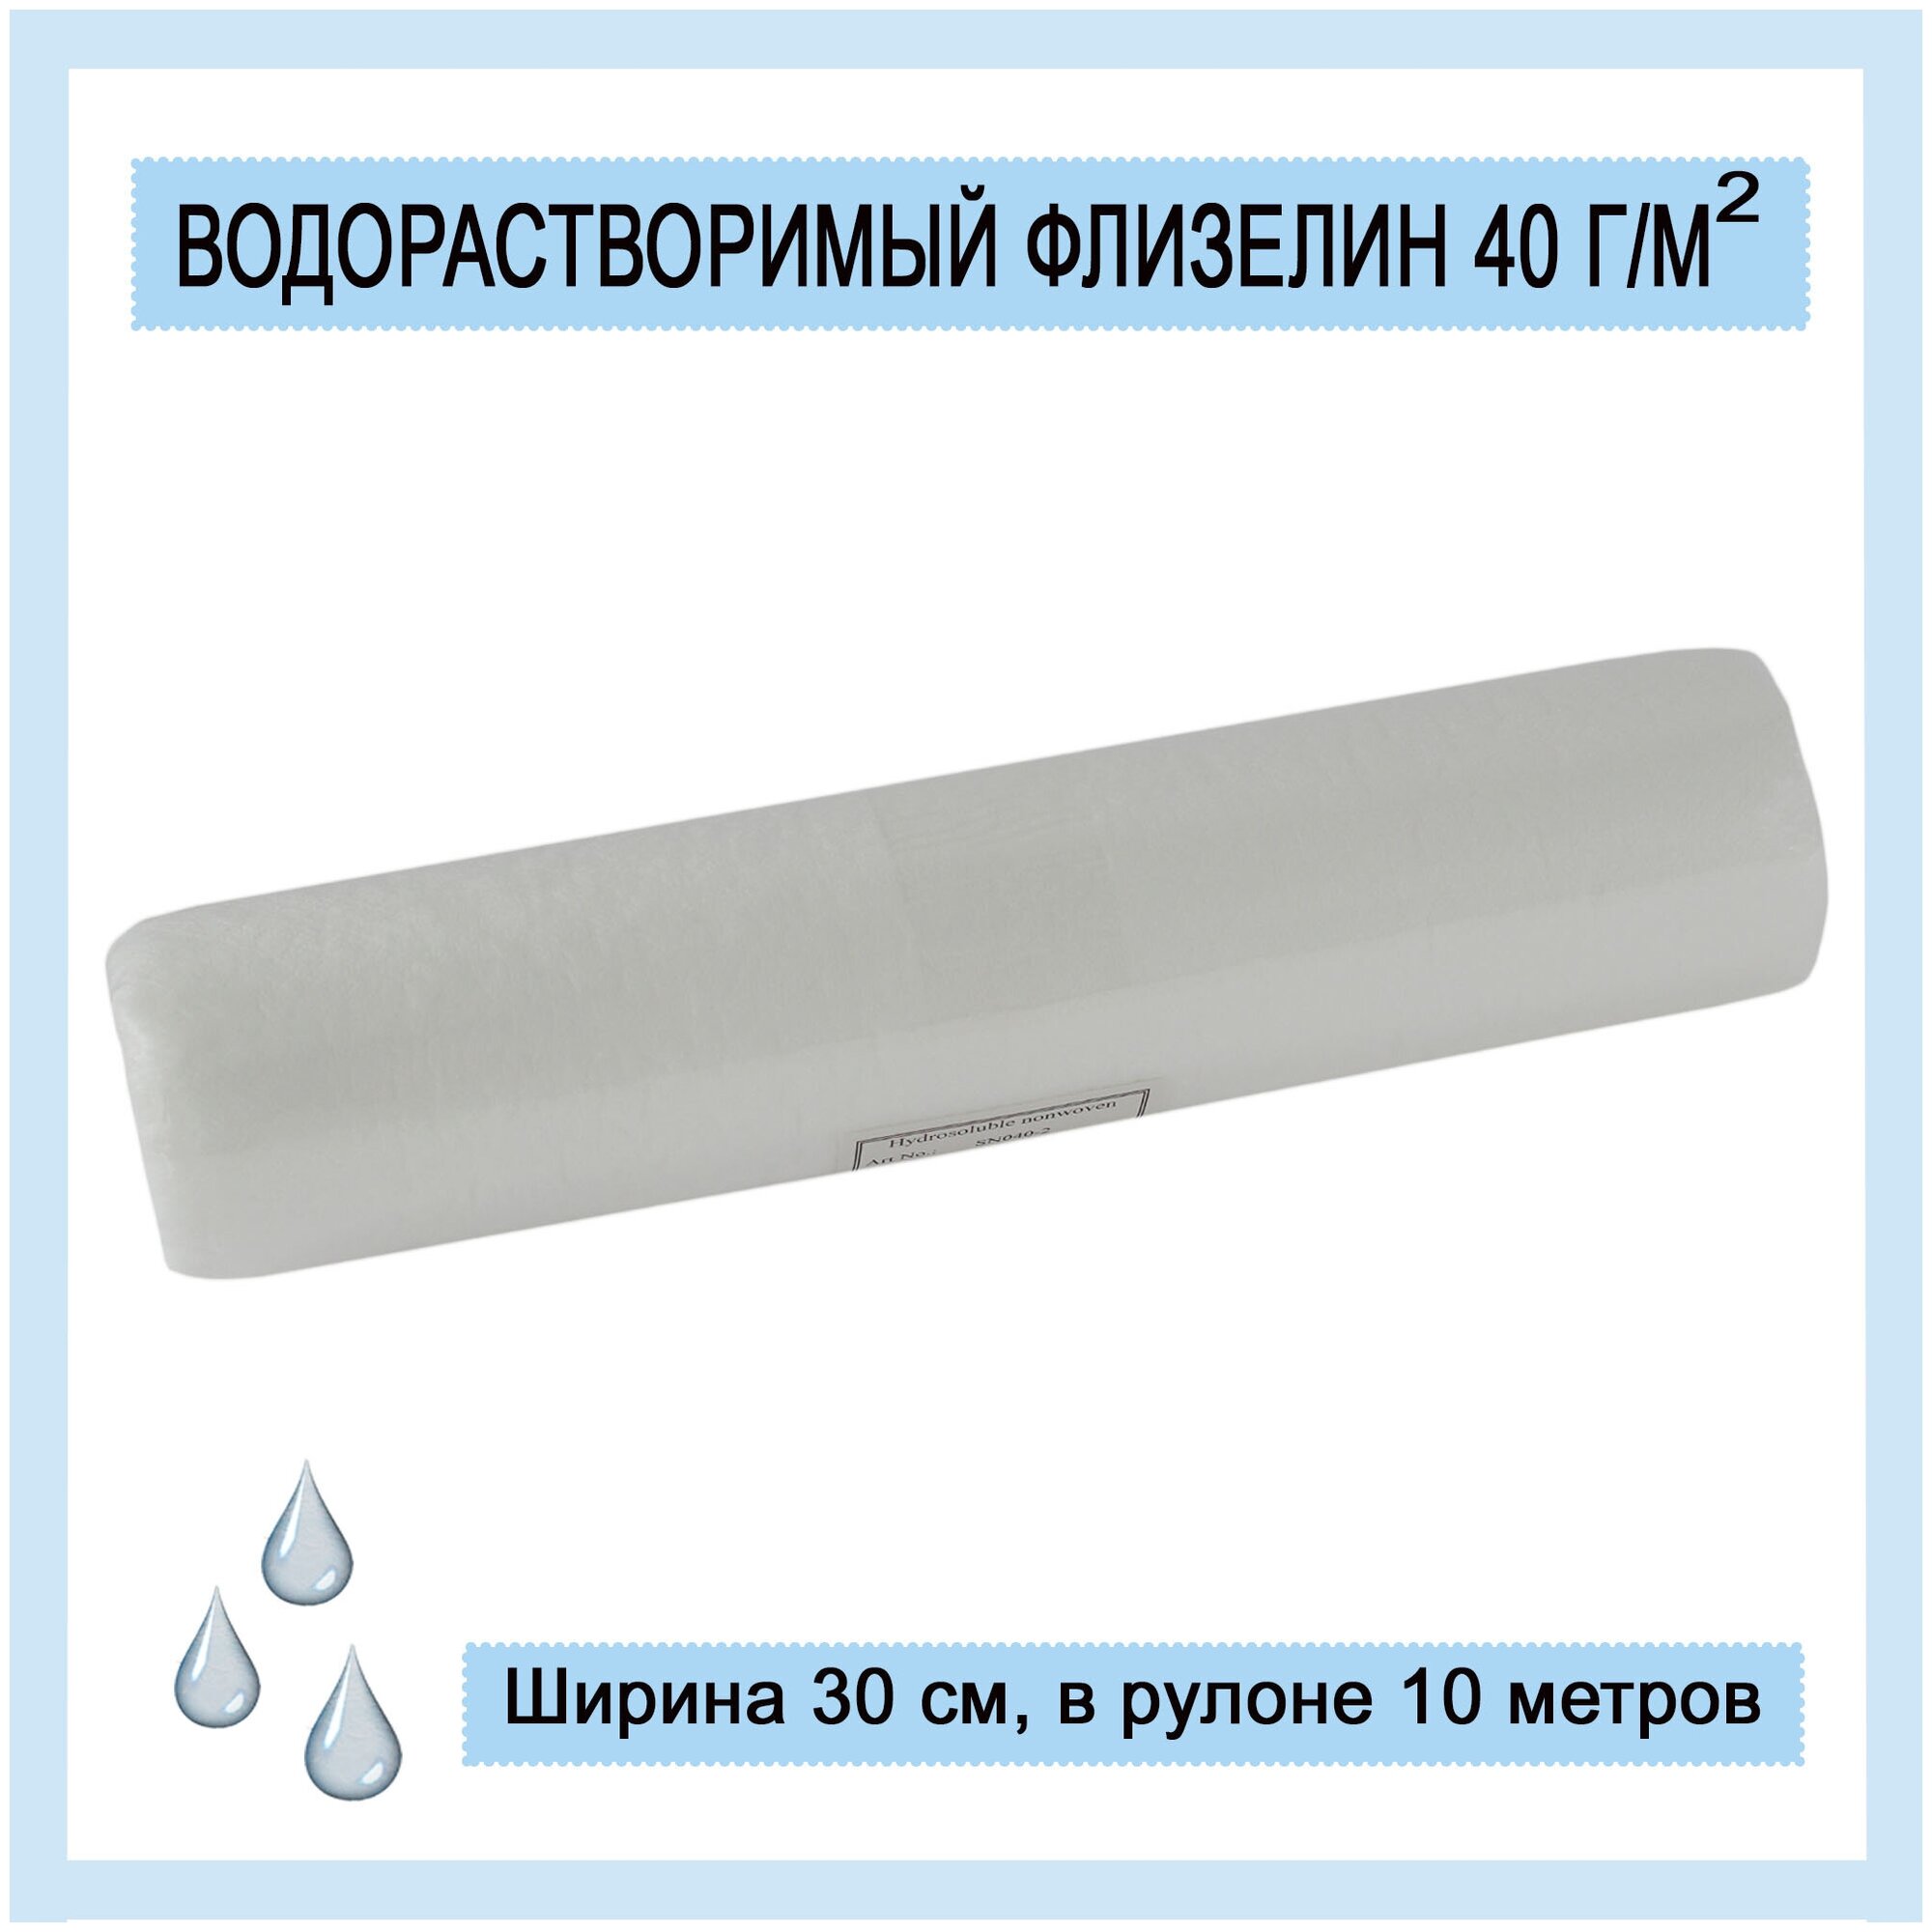 Водорастворимый флизелин 40 г/м2 рулон 30 см х 10 м белый